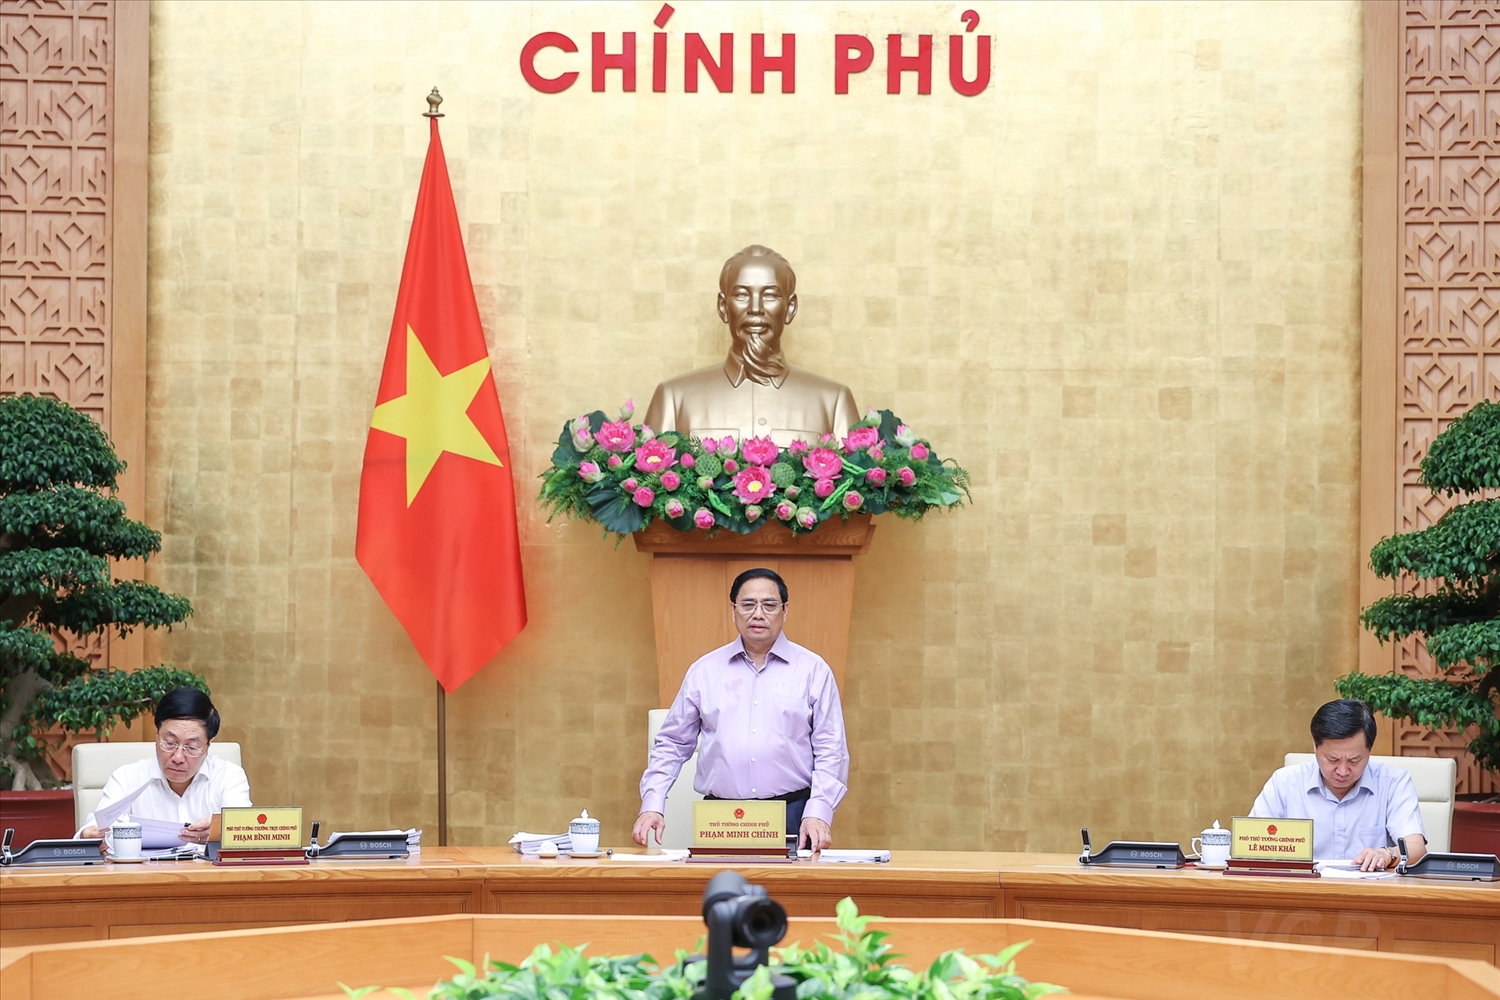 Thủ tướng Phạm Minh Chính: Cần coi trọng cả việc xây dựng luật mới, cả việc tổng kết, rà soát, sửa đổi, bổ sung các quy định hiện hành - Ảnh: VGP/Nhật Bắc